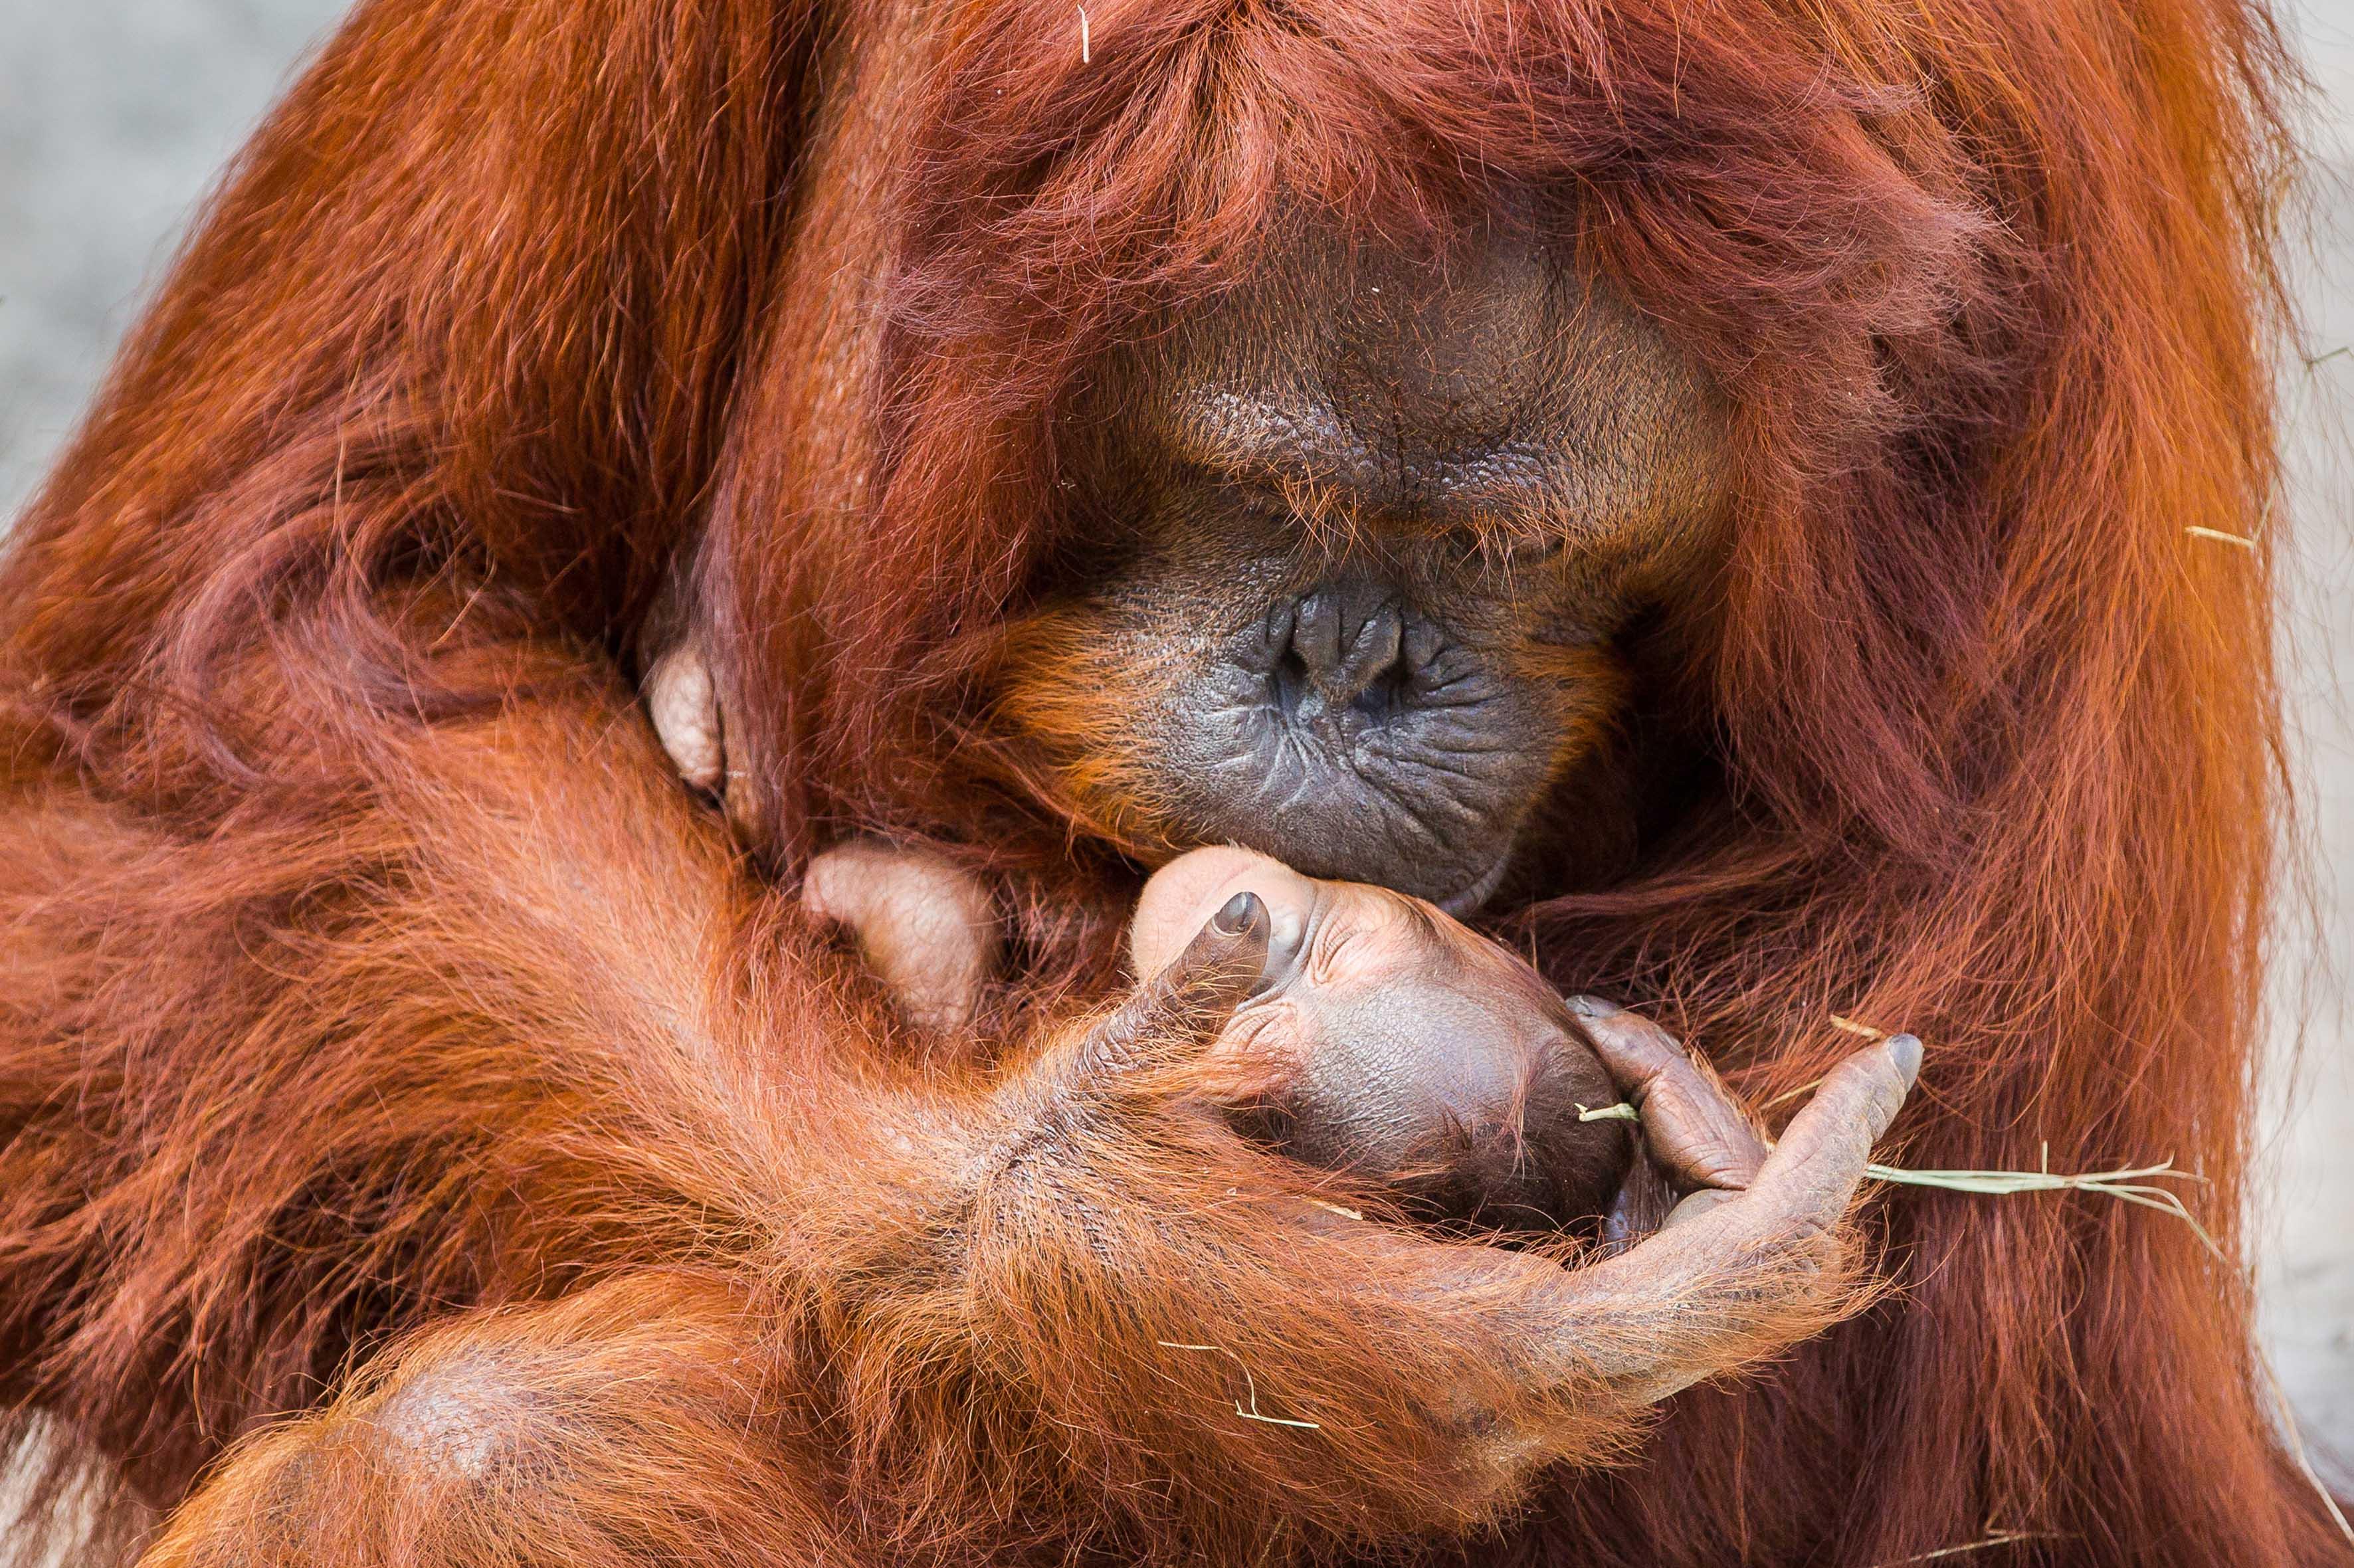 peni di orango durante lerezione, il pene cresce